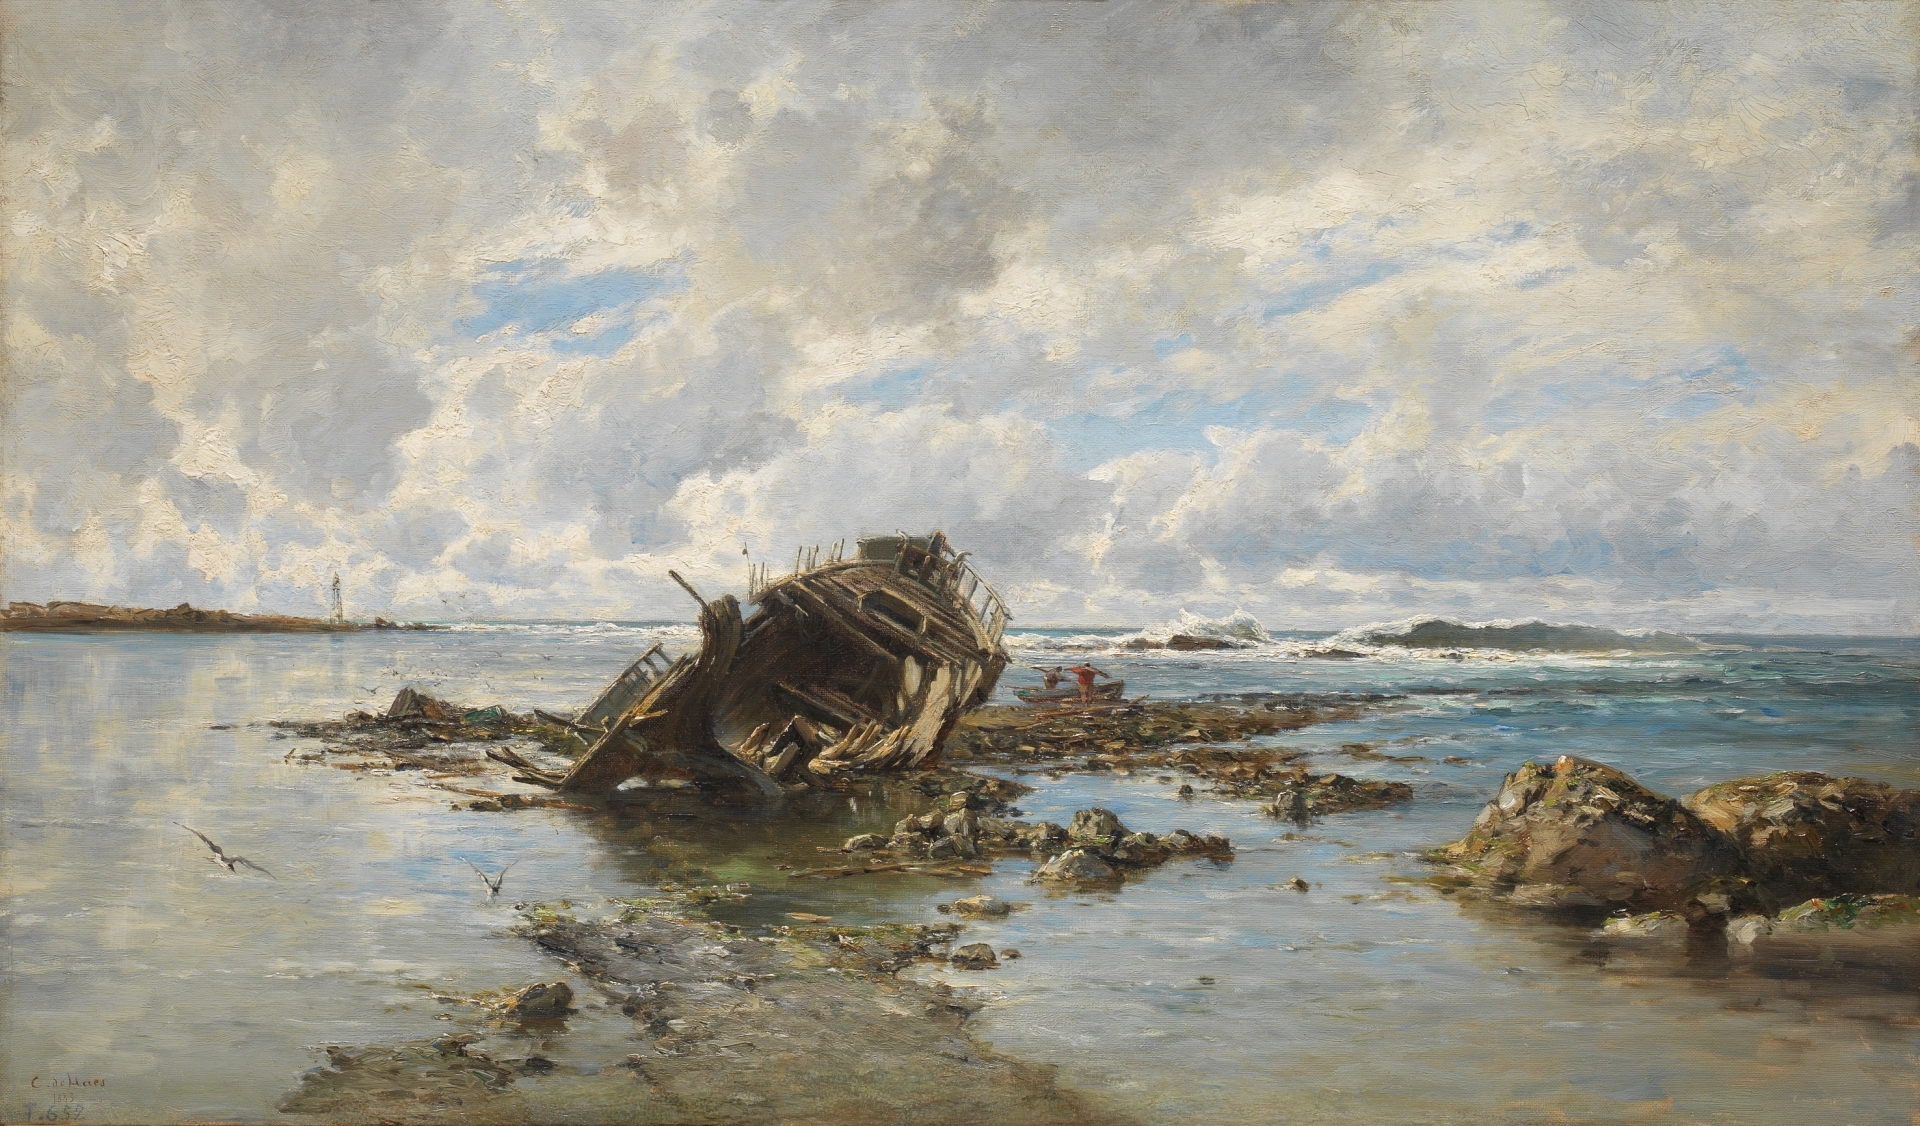 Carlos de Haes: Un barco naufragado ©Museo Nacional del Prado